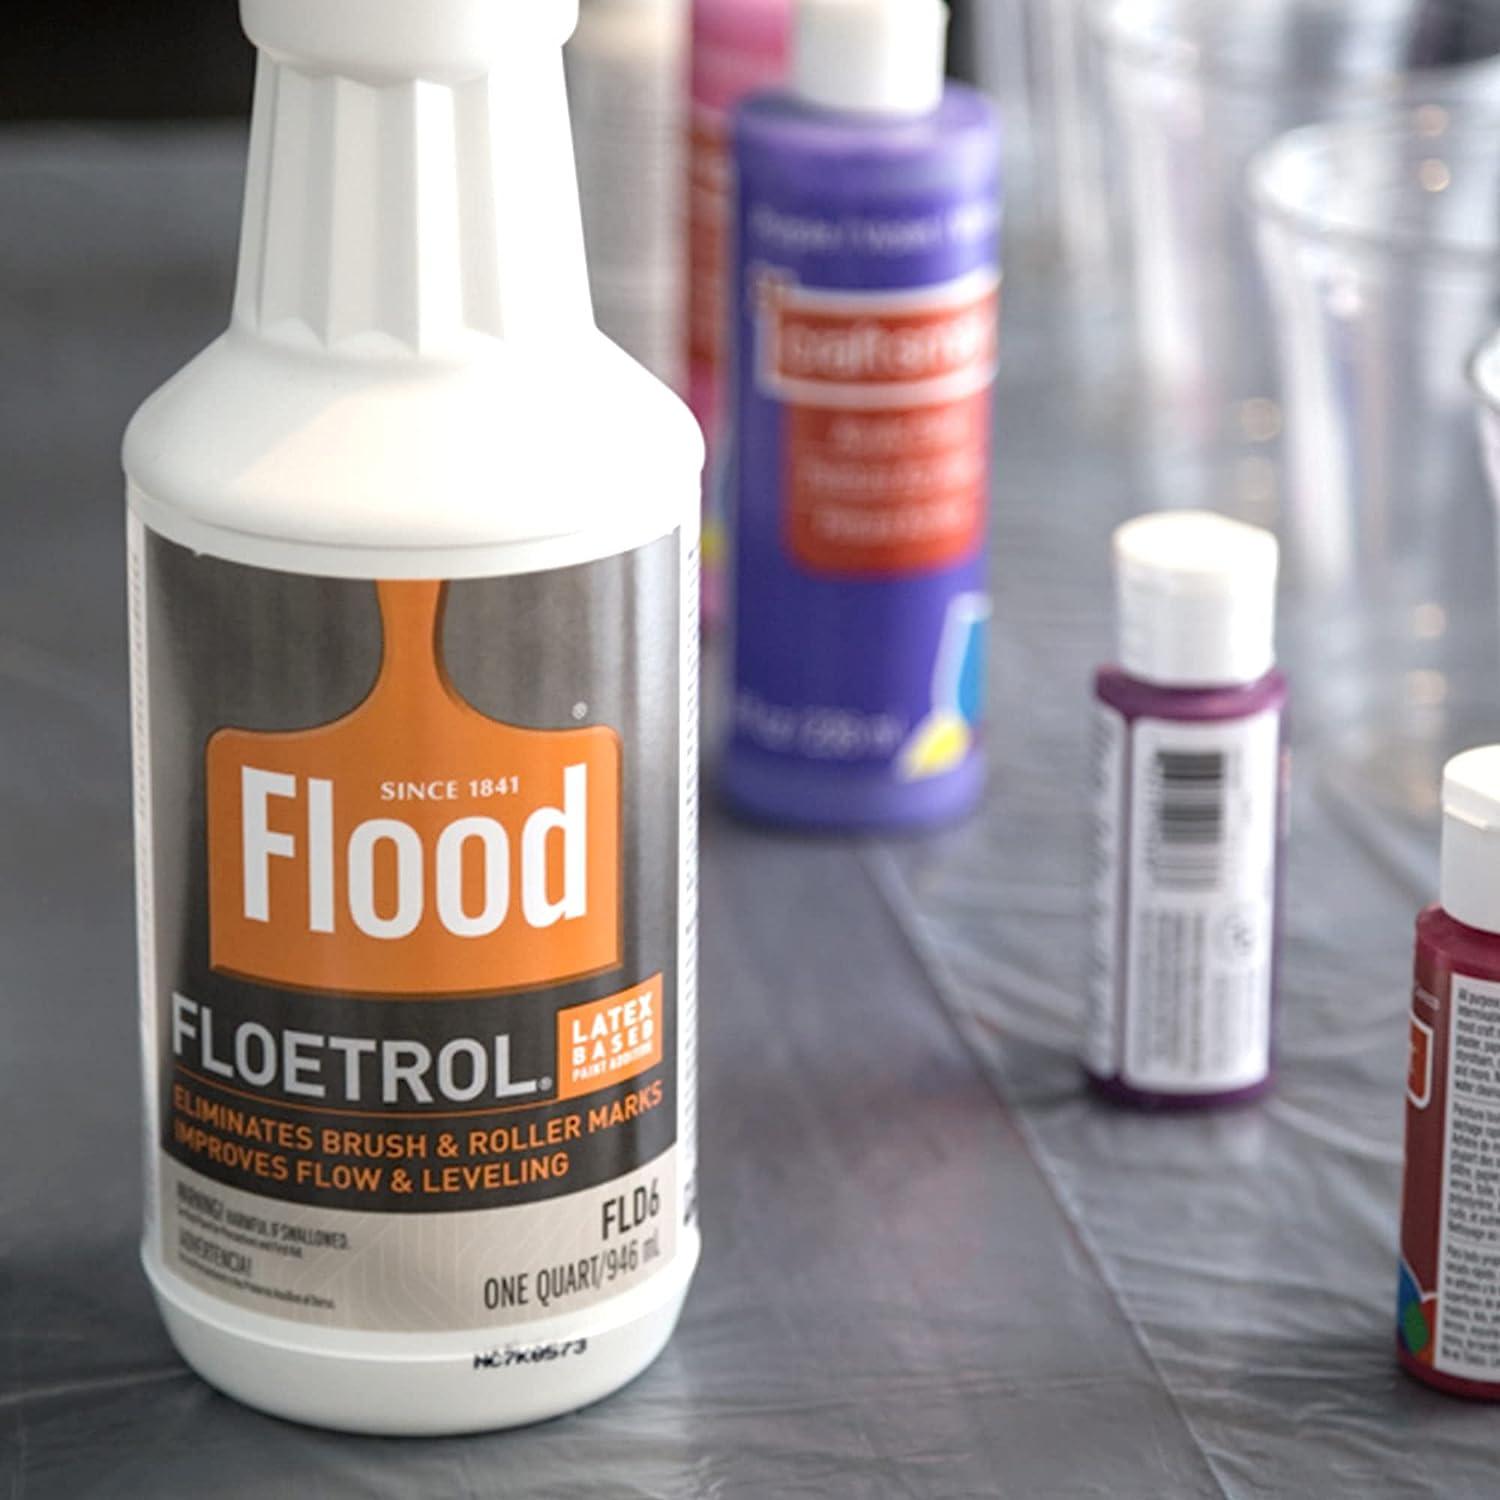 Floetrol® Latex-Based Paint Additive